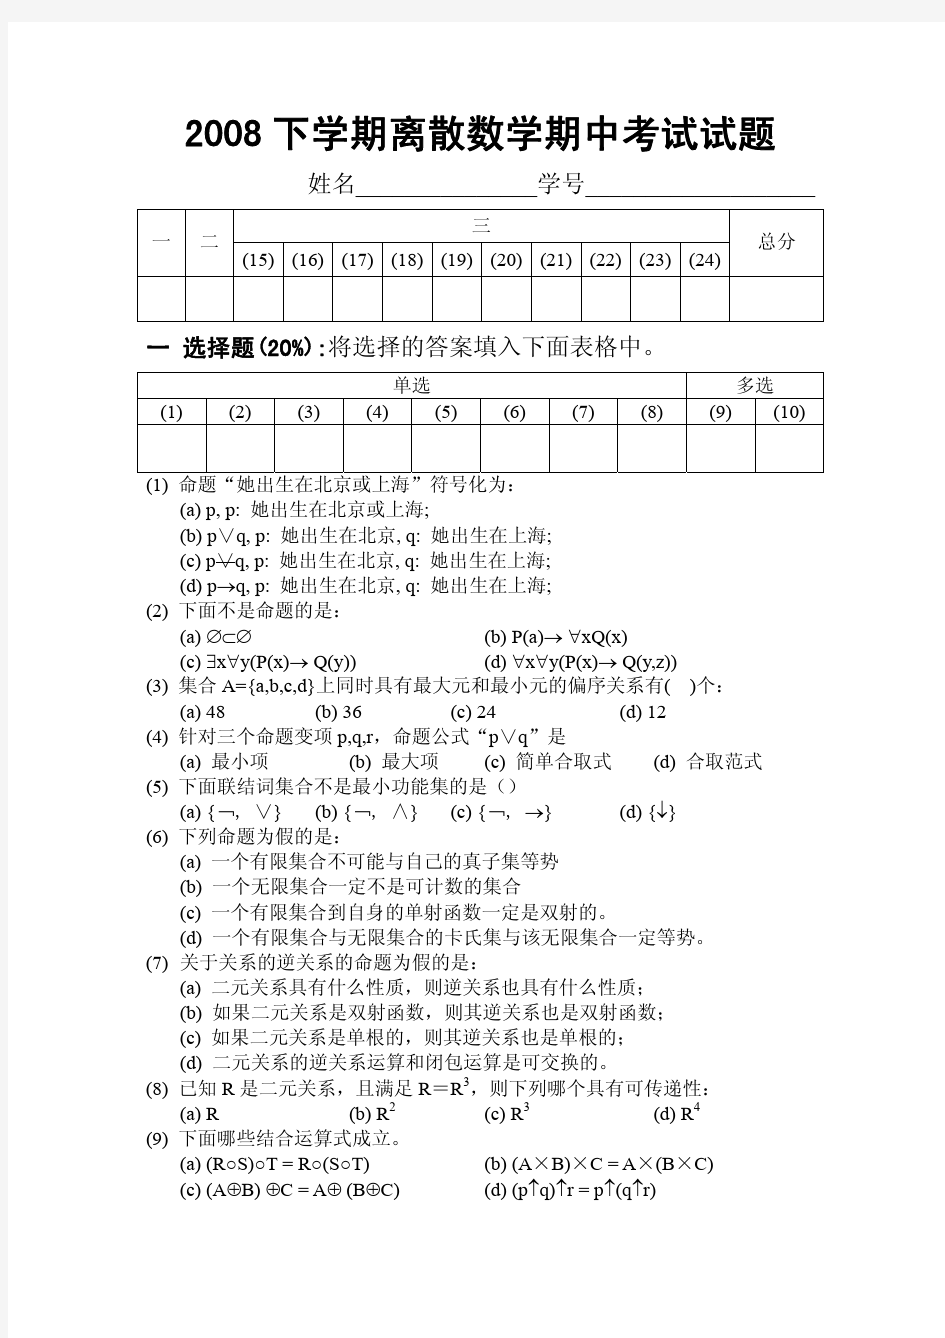 北京大学 离散数学 2008下学期期中考试试题